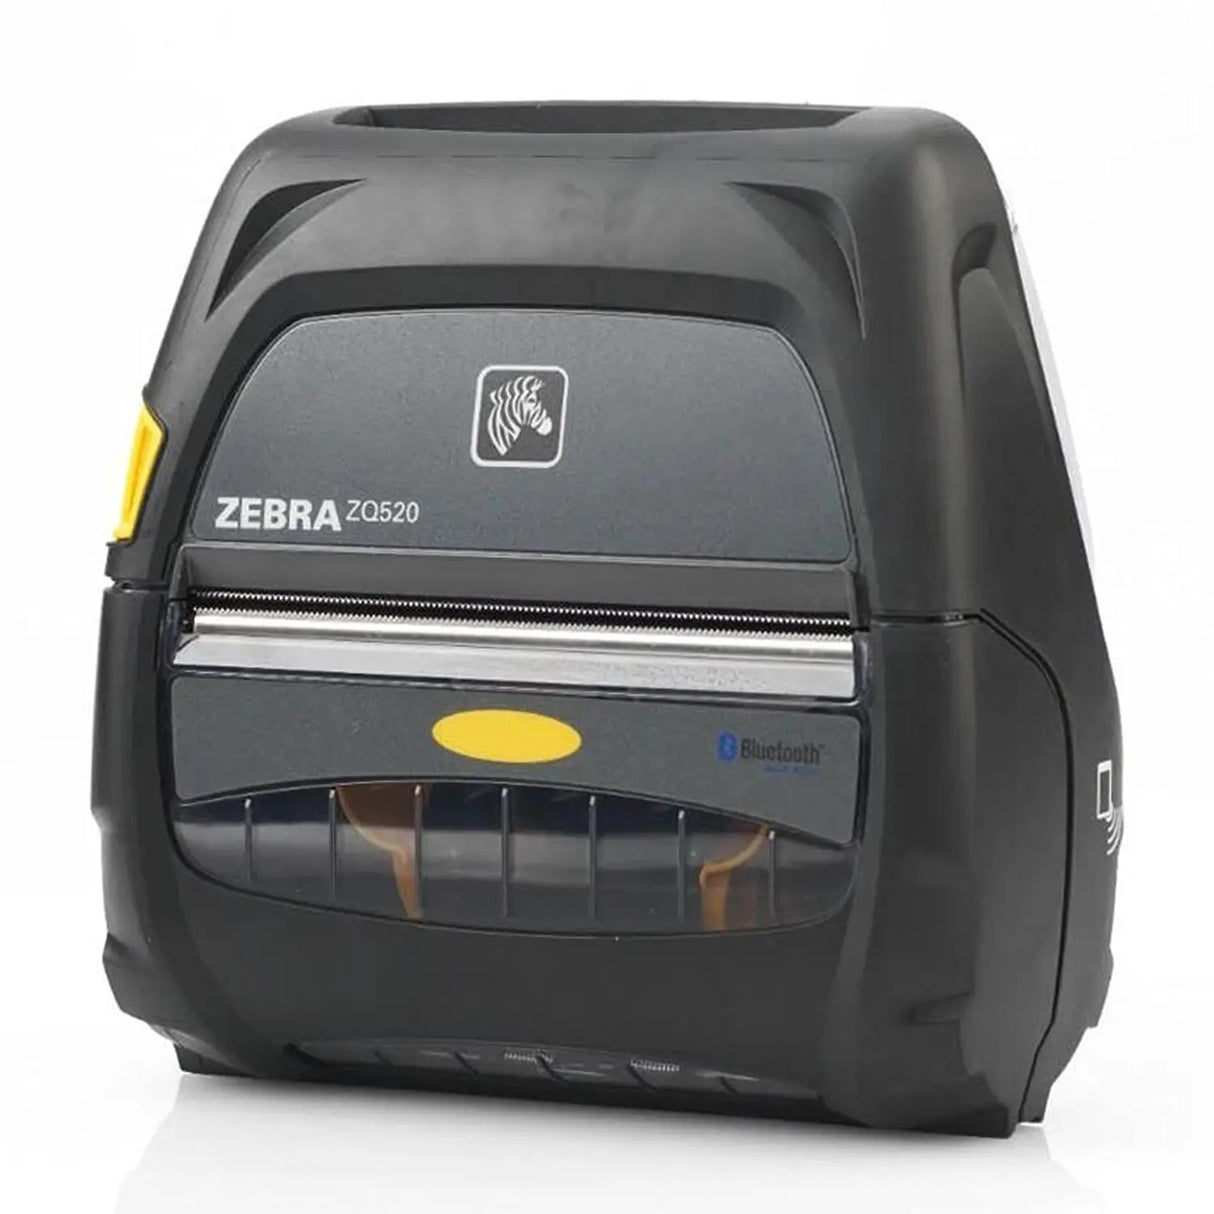 Impresora móvil Zebra ZQ520